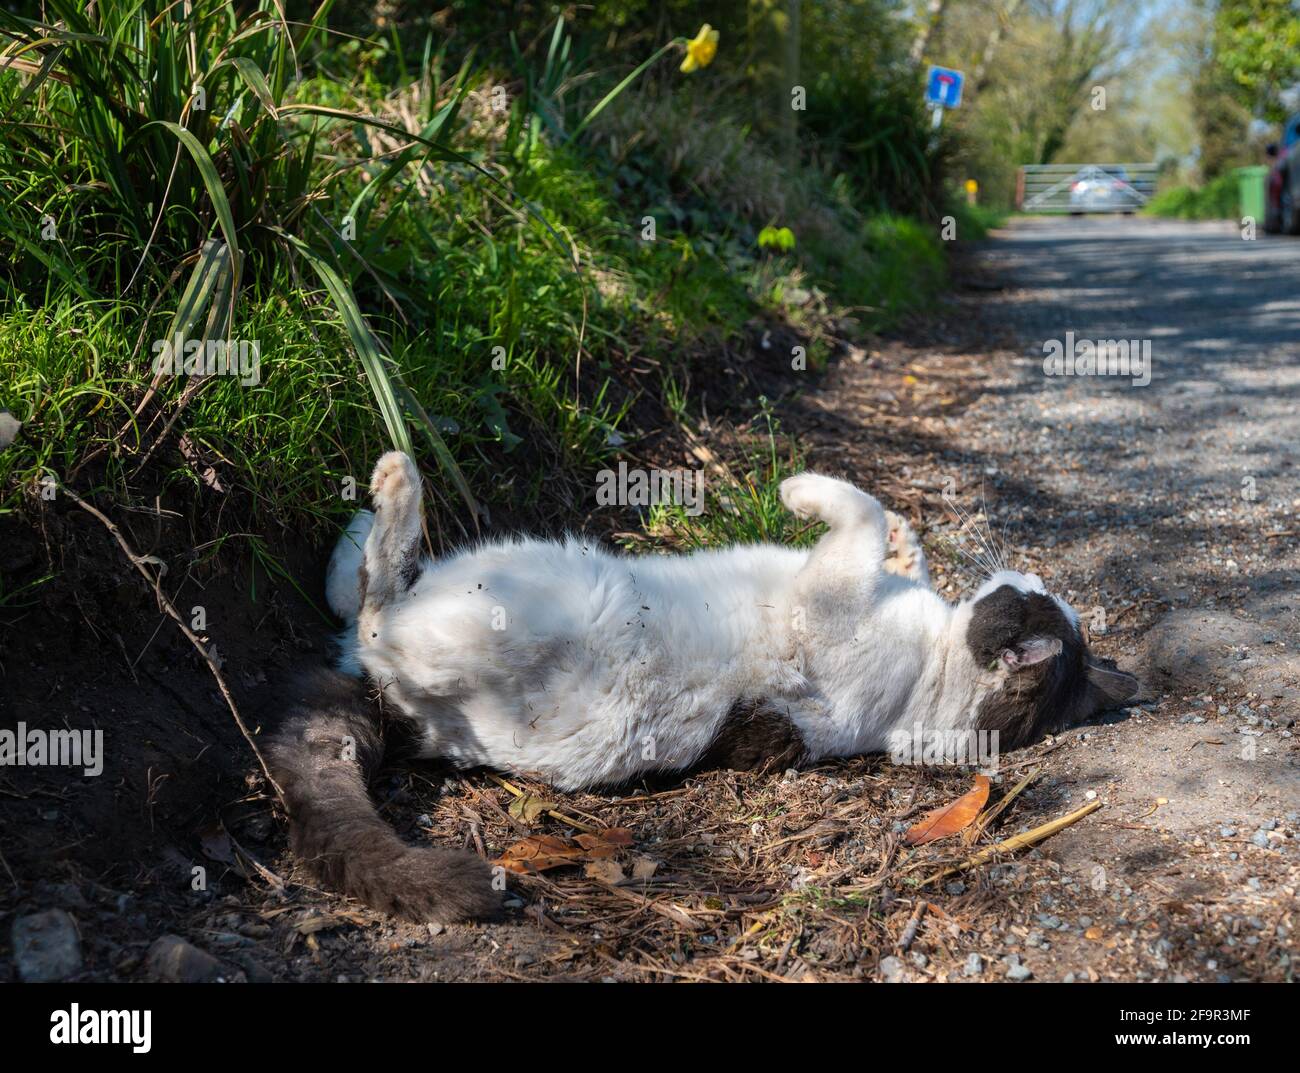 Gato doméstico blanco y marrón tumbado en el suelo y rodando alrededor de querer atención con sus patas en el aire, al lado de la carretera en Inglaterra, Reino Unido. Foto de stock